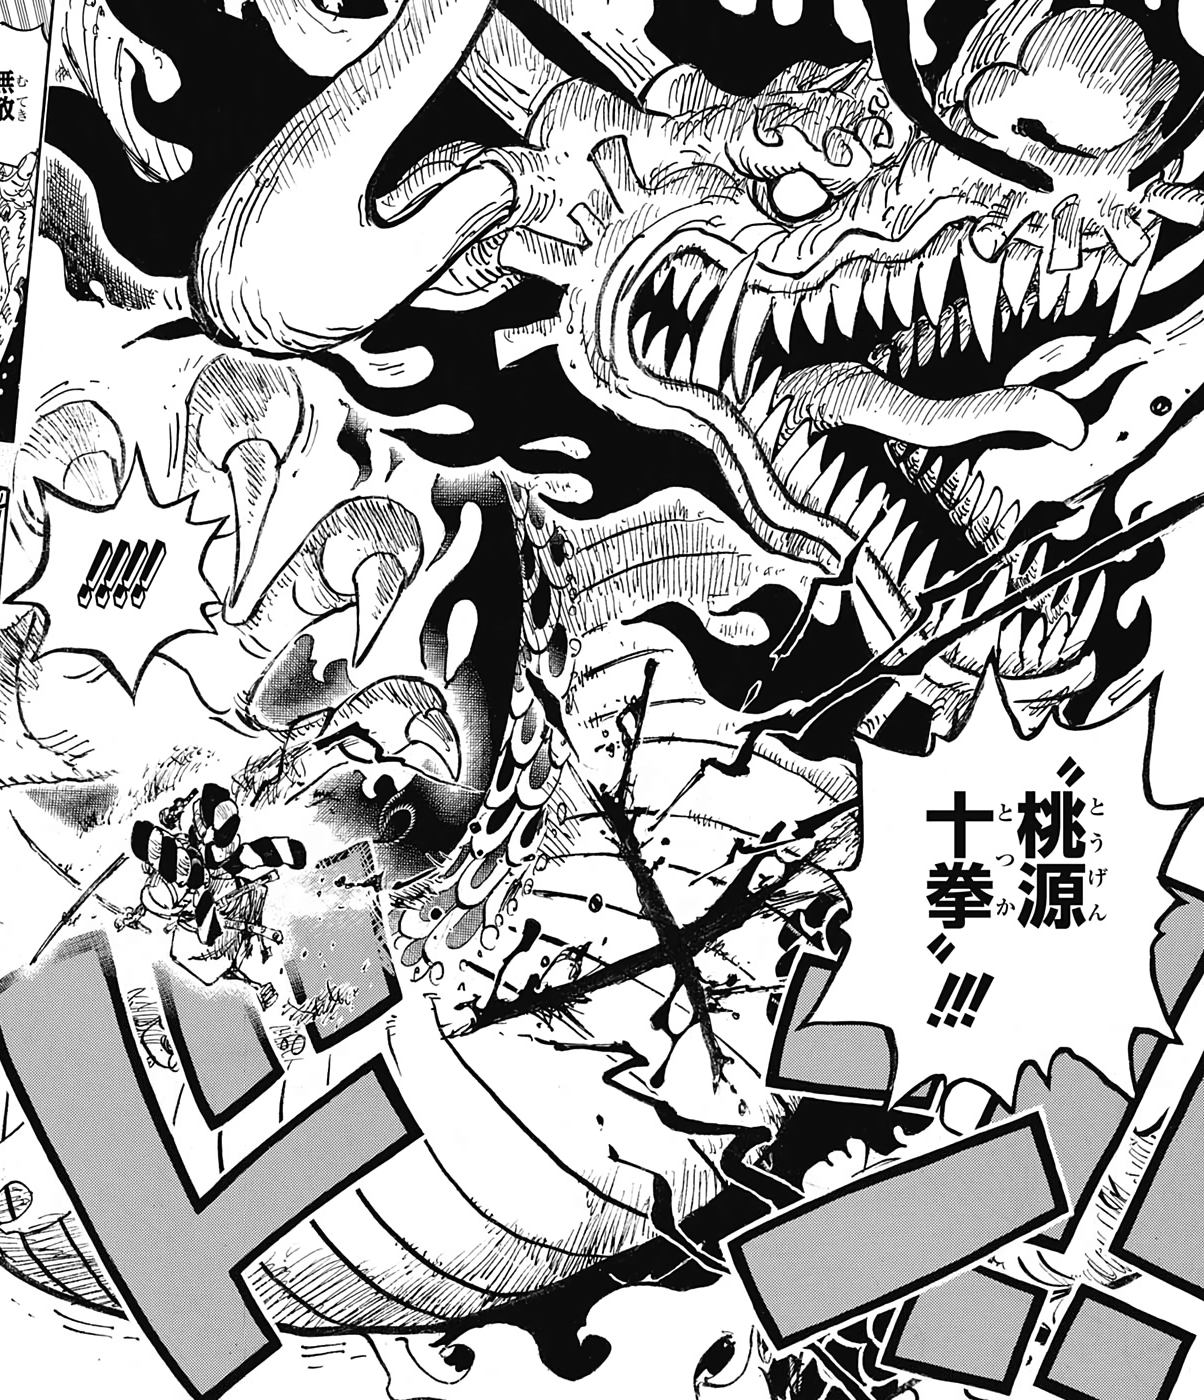 Ame no Habakiri: Hãy sẵn sàng cho cuộc chiến đầy gay cấn và hùng mạnh khi sử dụng Ame no Habakiri - một trong những thanh kiếm đẹp nhất trong One Piece. Những kỹ năng đặc biệt này sẽ giúp bạn chiến thắng địch thủ một cách dễ dàng. Đừng bỏ lỡ ảnh đầy màu sắc và cuốn hút này. Hãy nhấp vào ảnh để khám phá thế giới đầy màu sắc của One Piece.